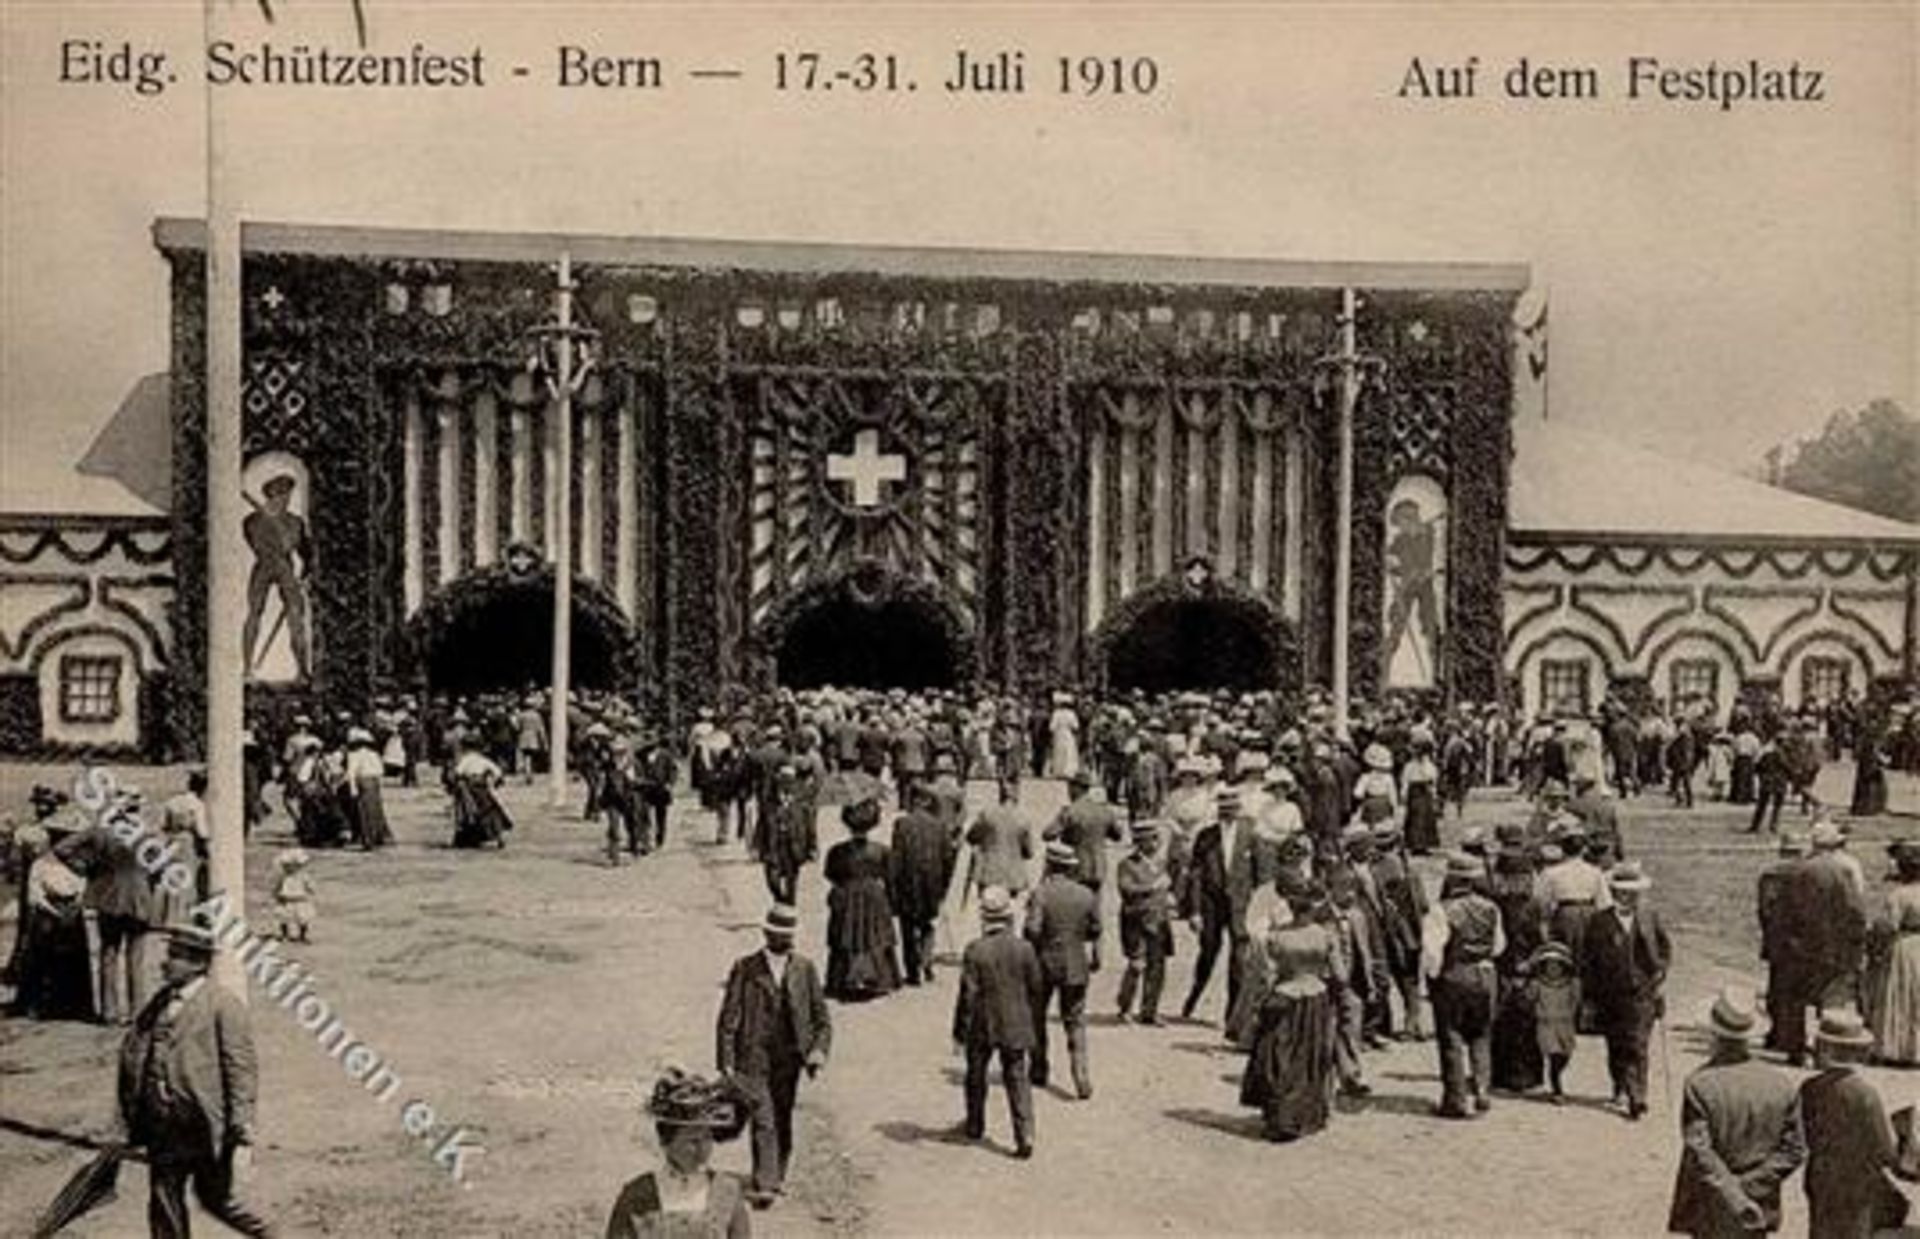 Bern (3000) Schweiz Eidgenössisches Schützenfest 17. bis 31. Juli 1910 IDieses Los wird in einer